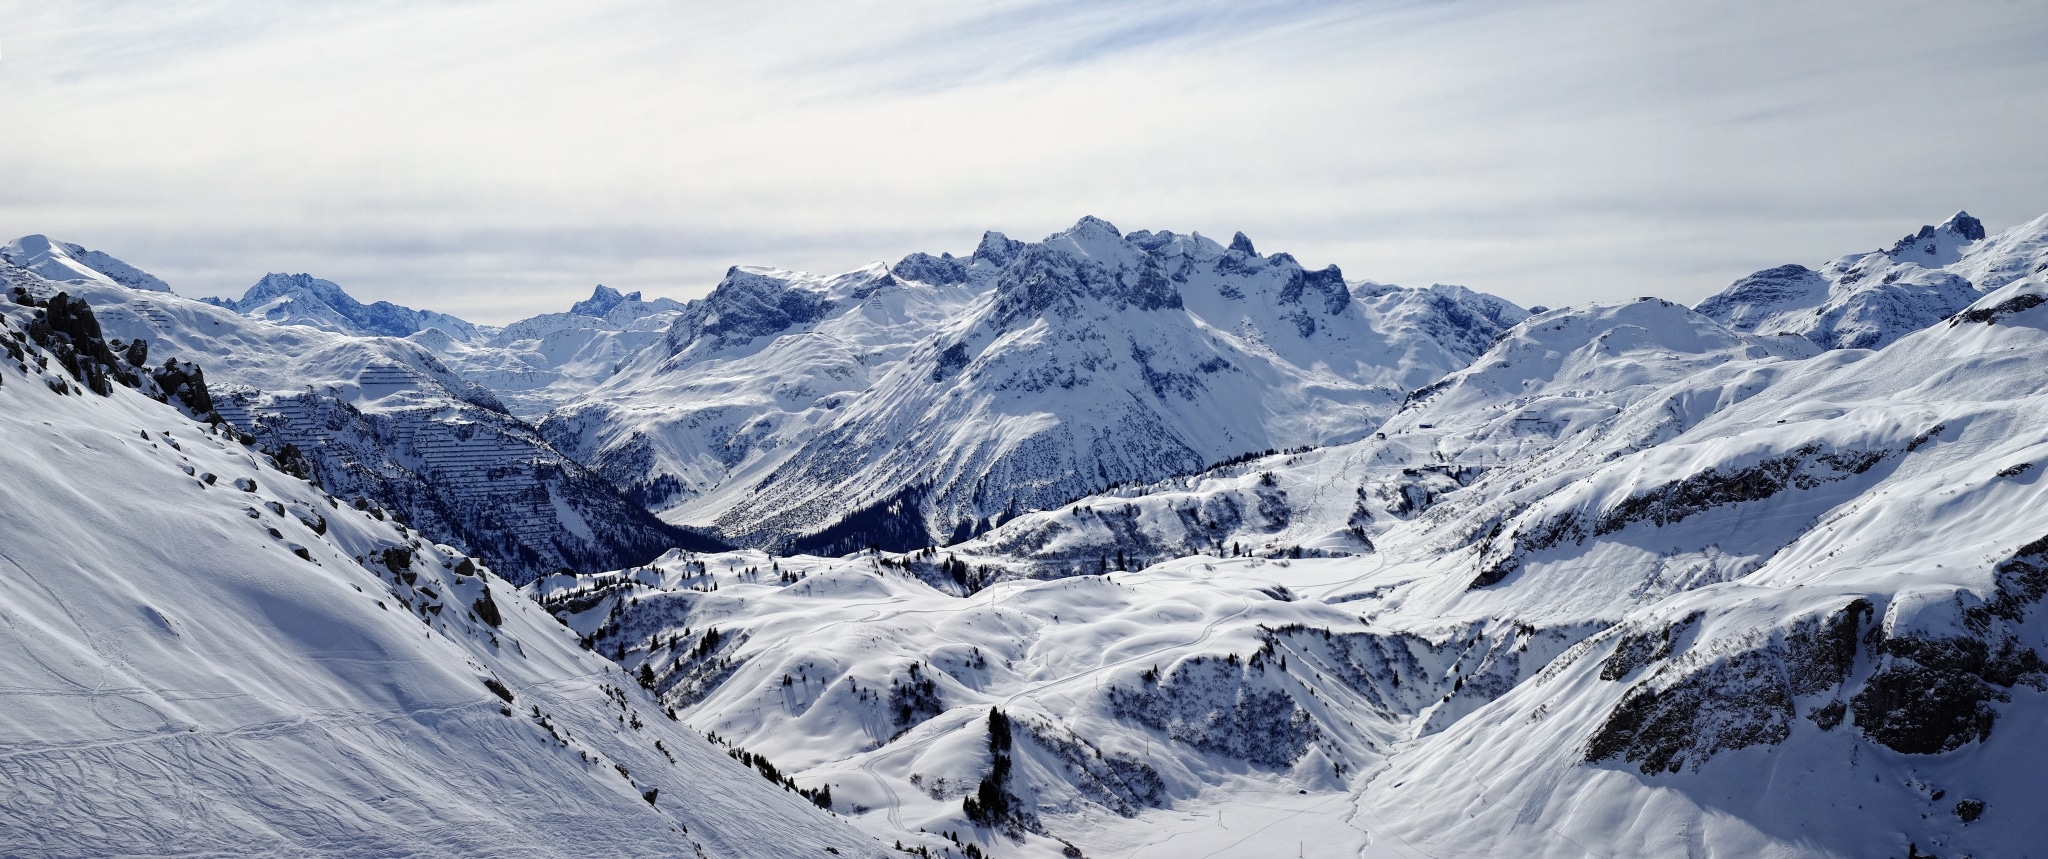 Skigebiet Lech ist Teil des größten Skigebiets weltweit